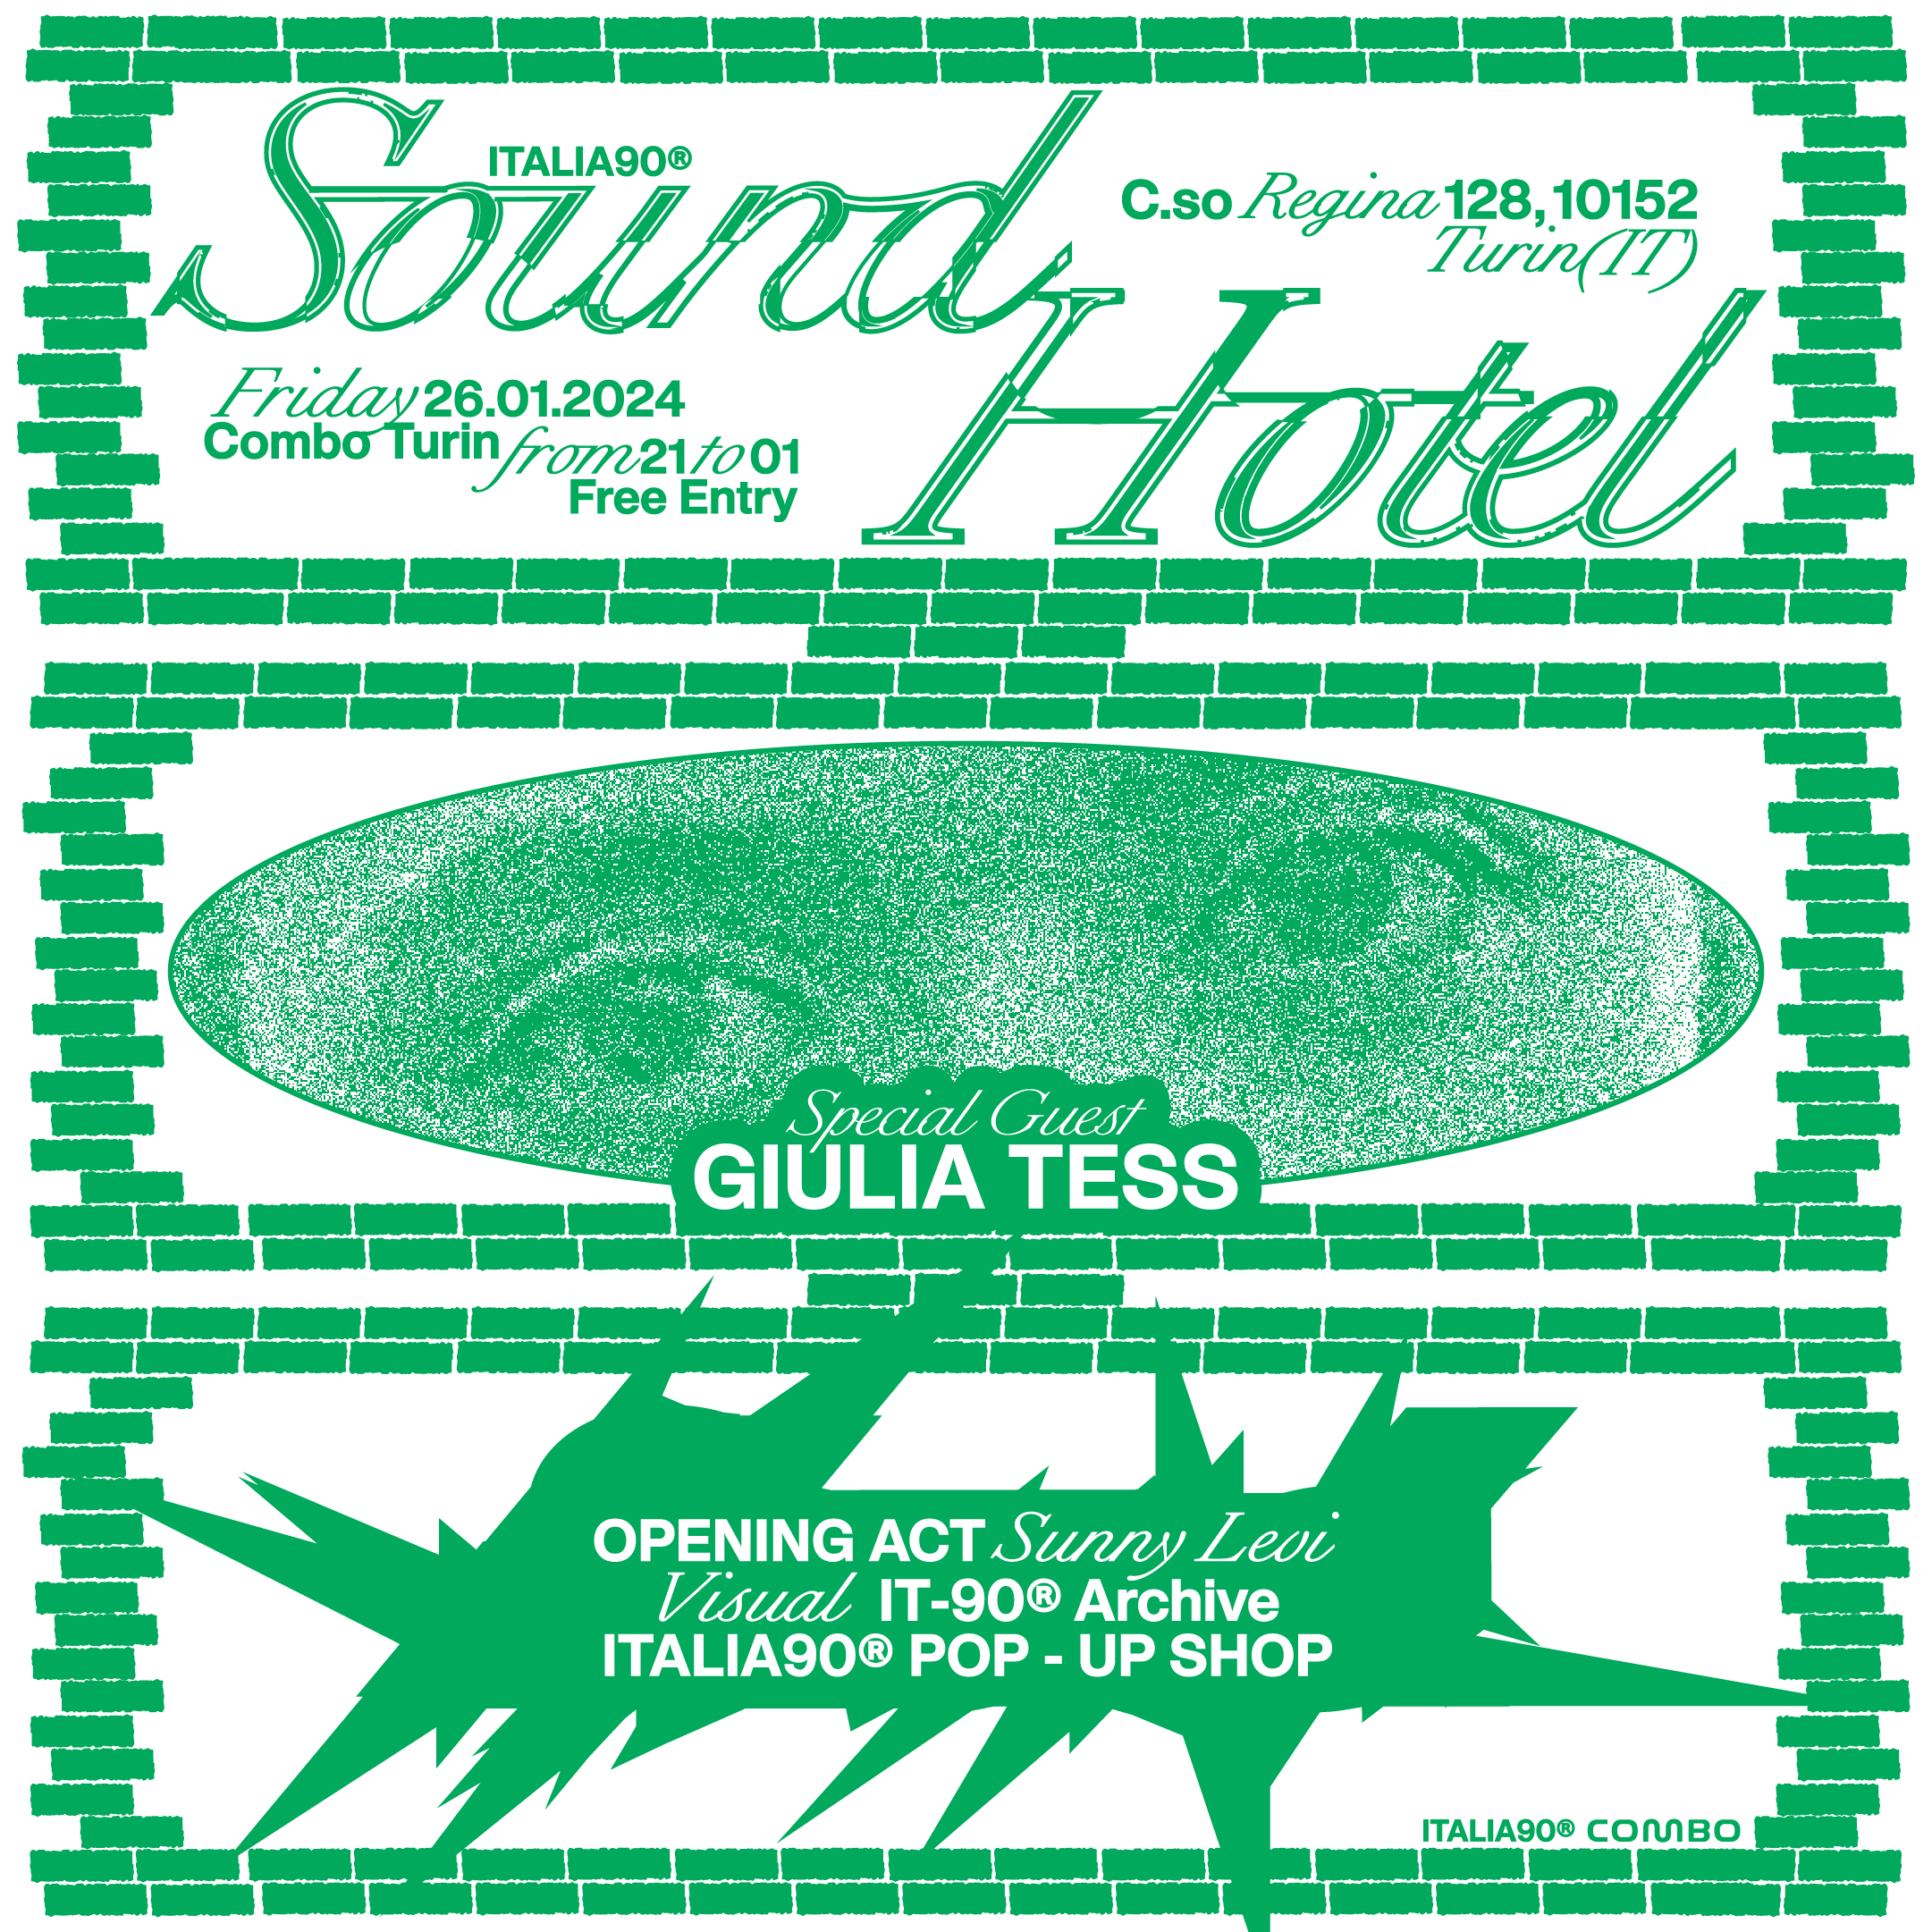 Italia90 Sound Hotel w\ Giulia Tess - フライヤー表